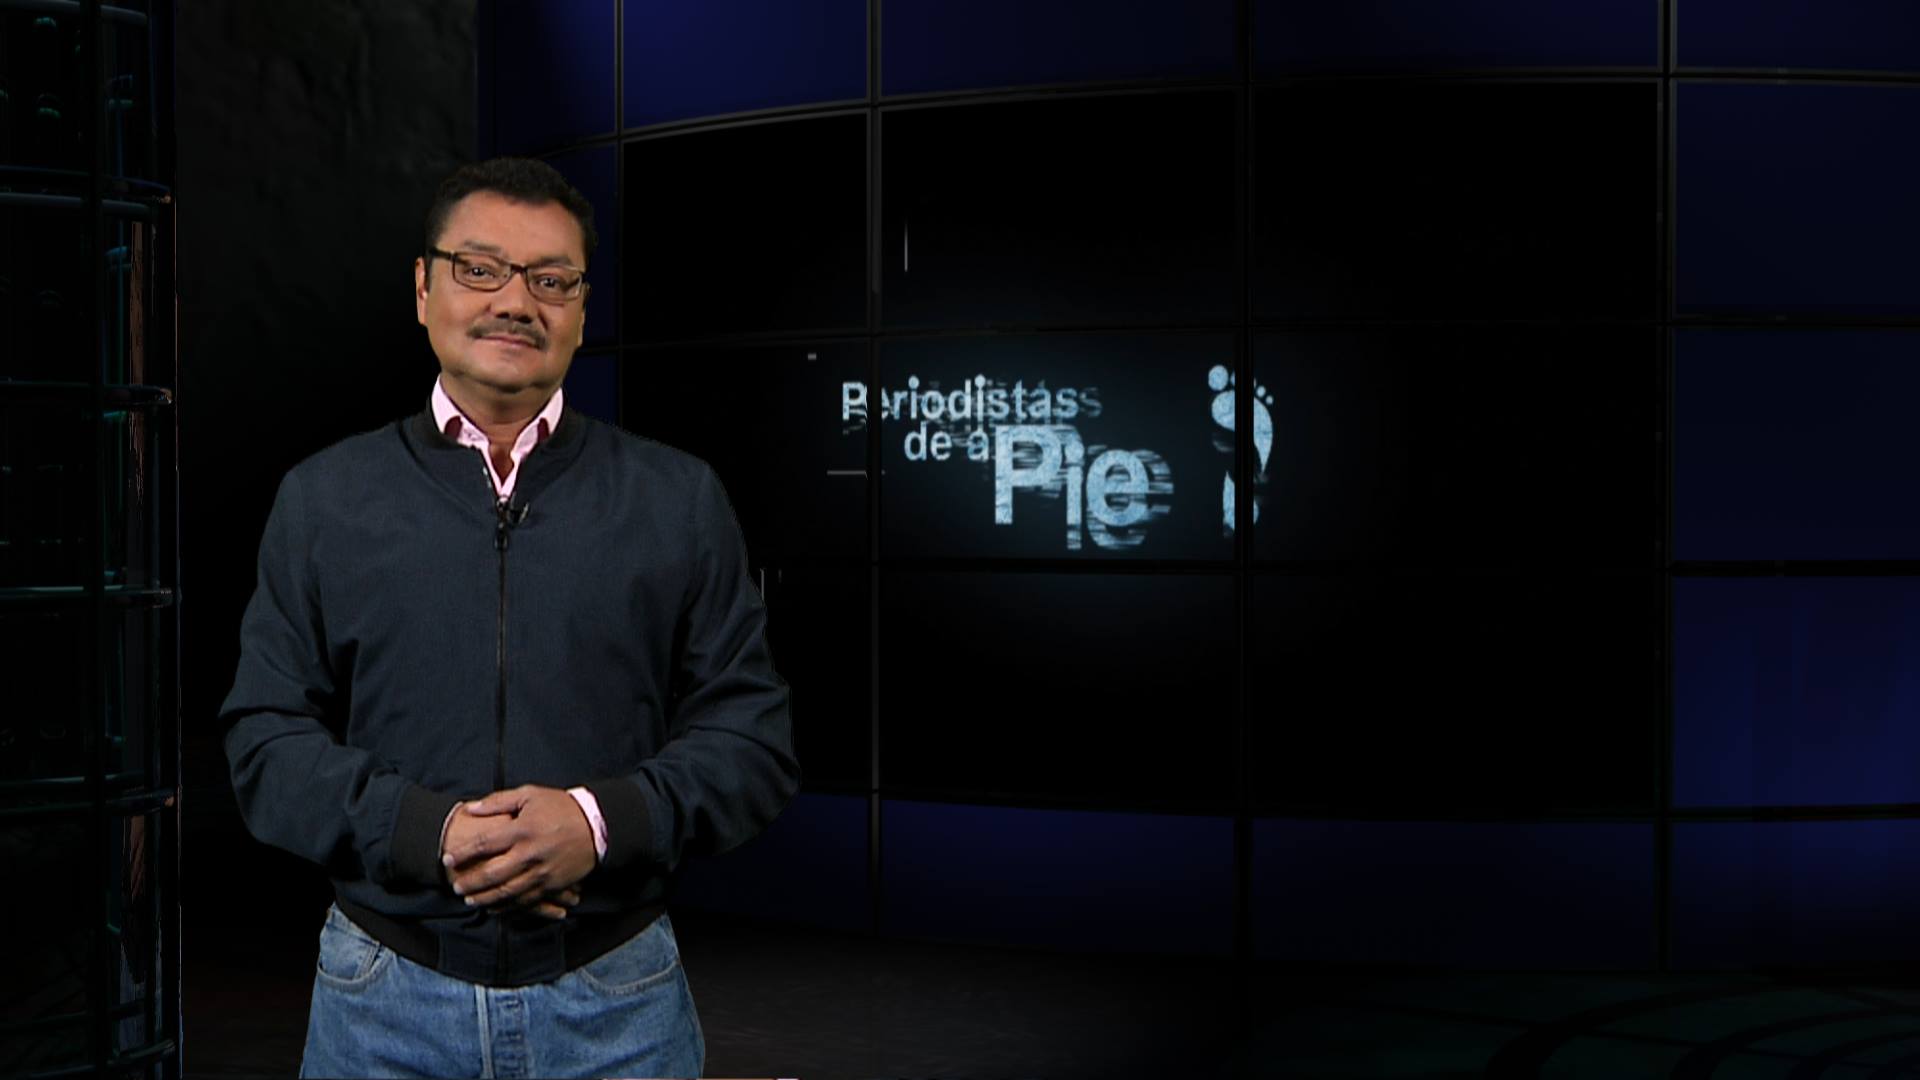 Periodistas de a Pie - Periodismo en México, coctel de deber, esperanza y riesgo - 16/11/2017